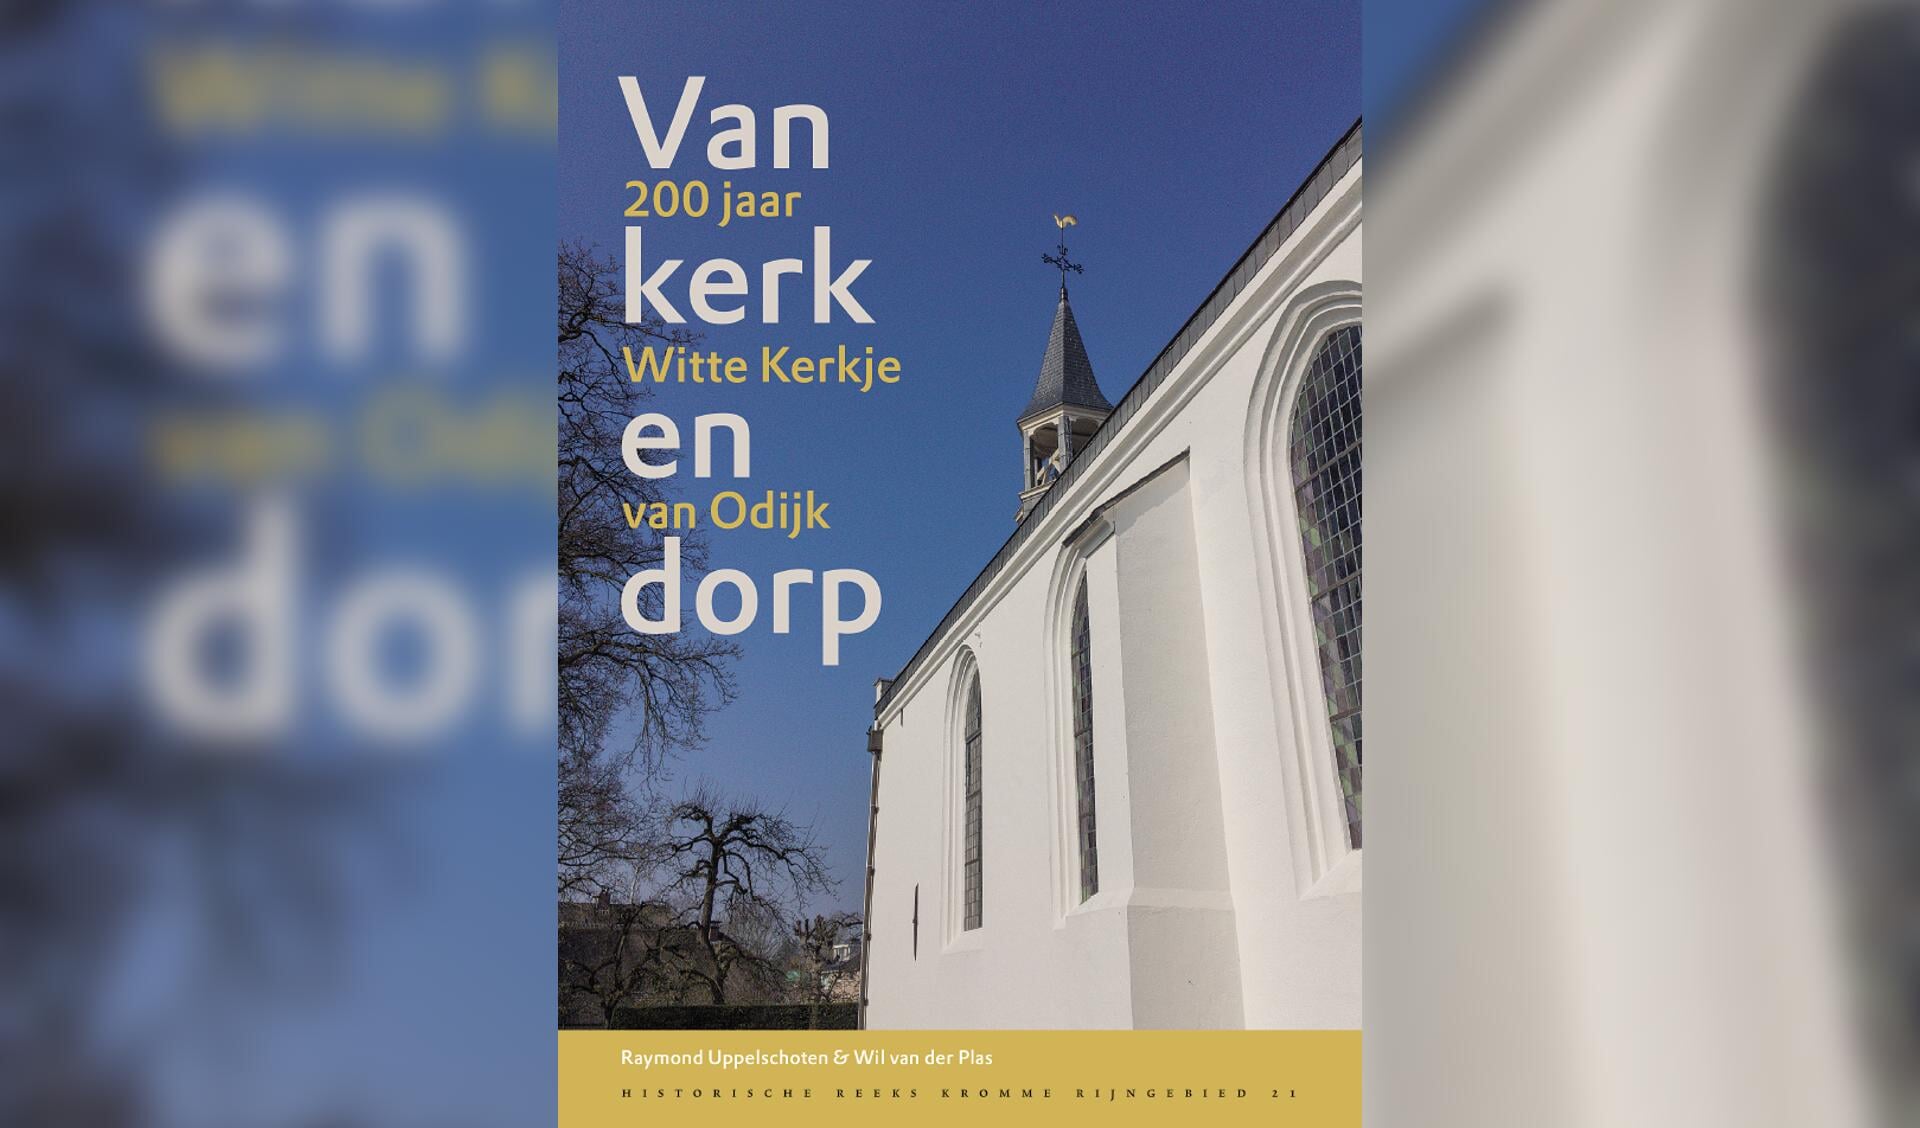 Omslag van jubileumboek Van kerk en dorp, 200 jaar Witte Kerkje van Odijk